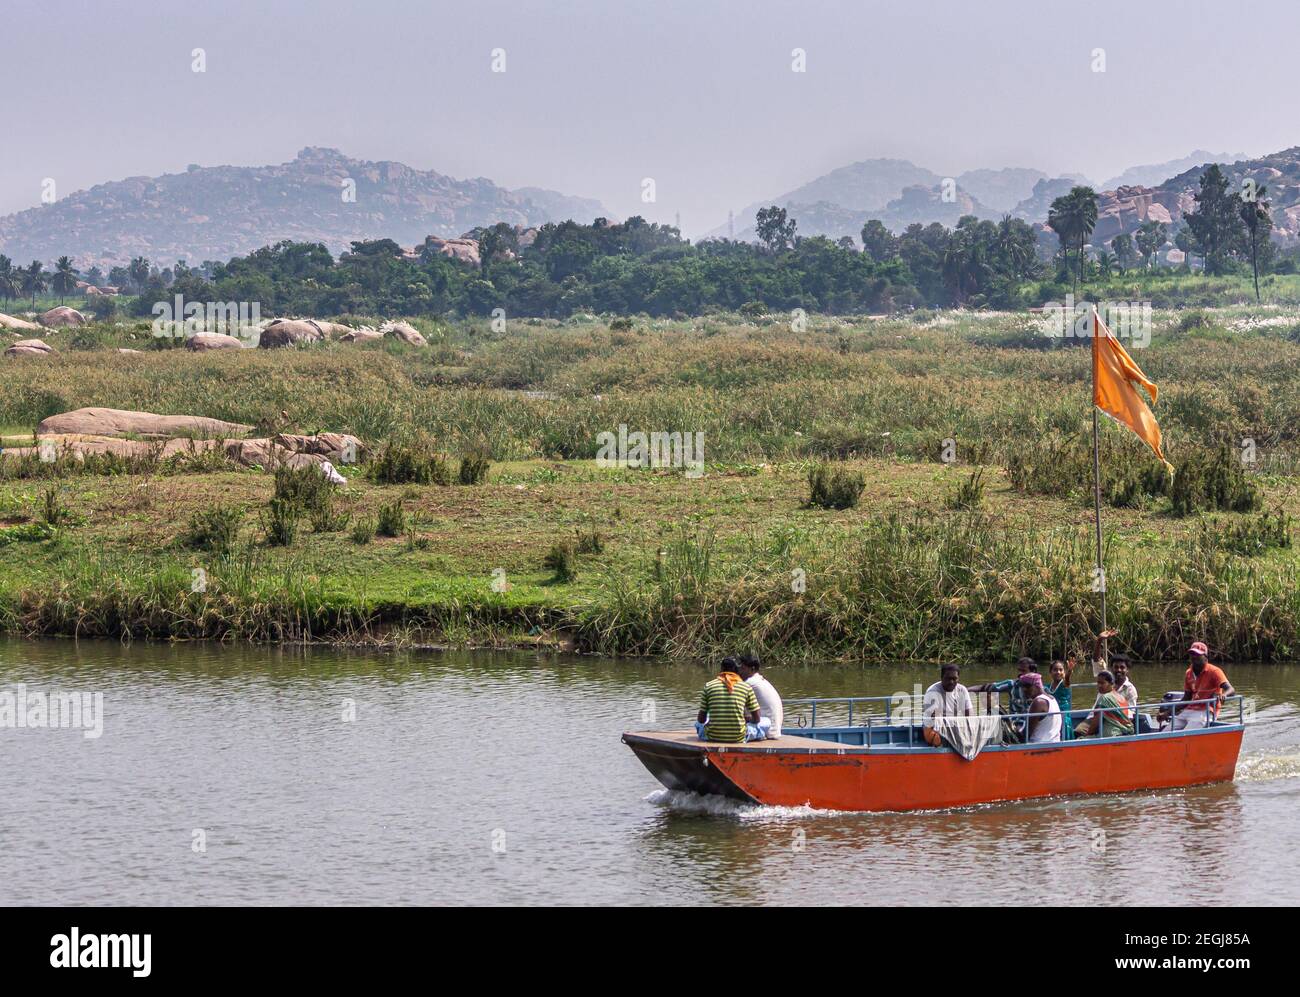 Anegundi, Karnataka, Inde - 9 novembre 2013 : petit traversier rouge sur la rivière Tungabhadra entre les îles du temple et la terre principale. Beaucoup de Mars vert Banque D'Images